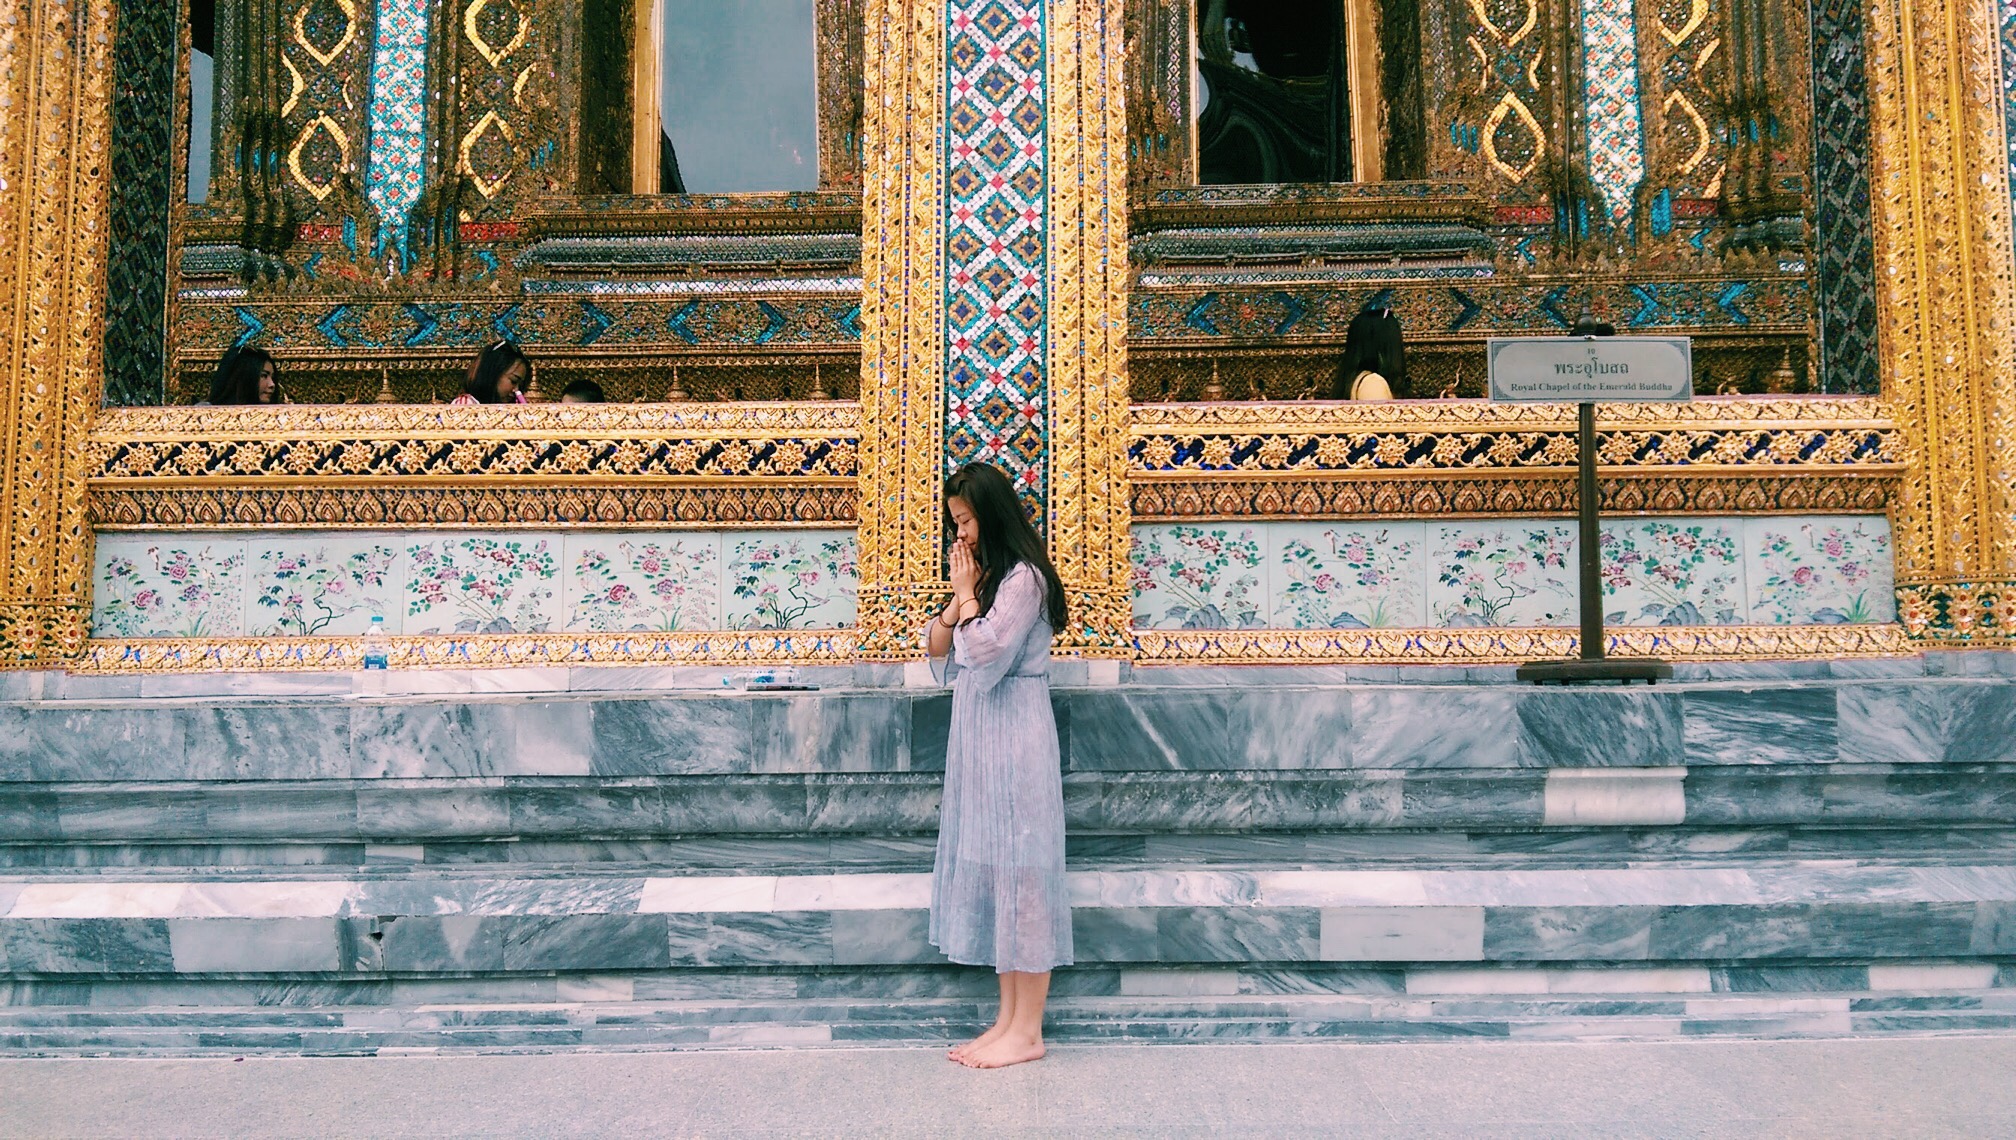 Grand palace bangkok thailand